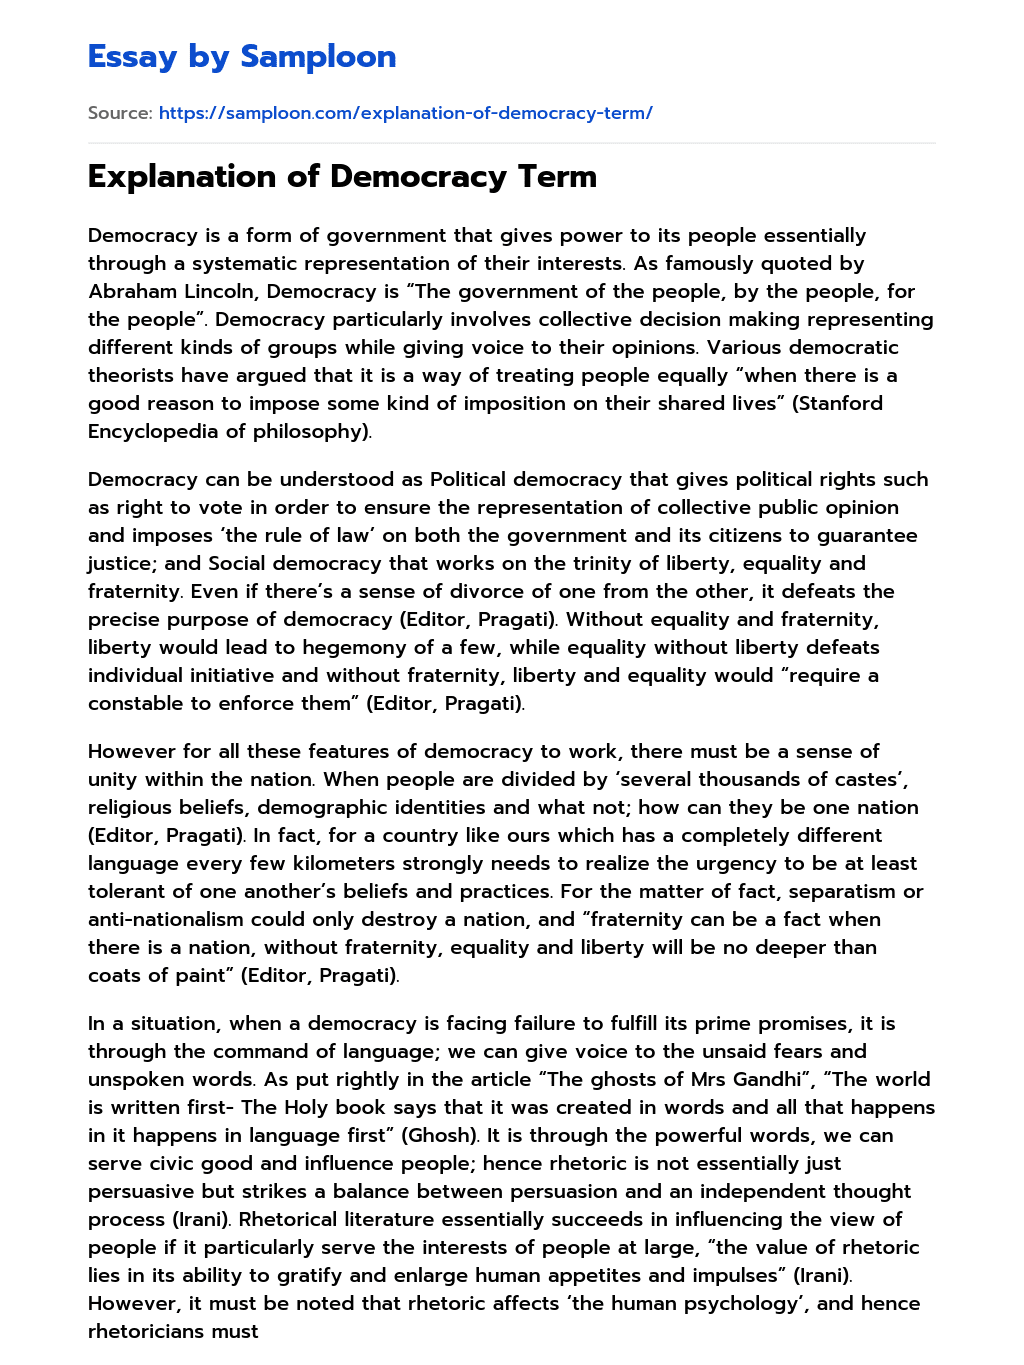 Explanation of Democracy Term essay